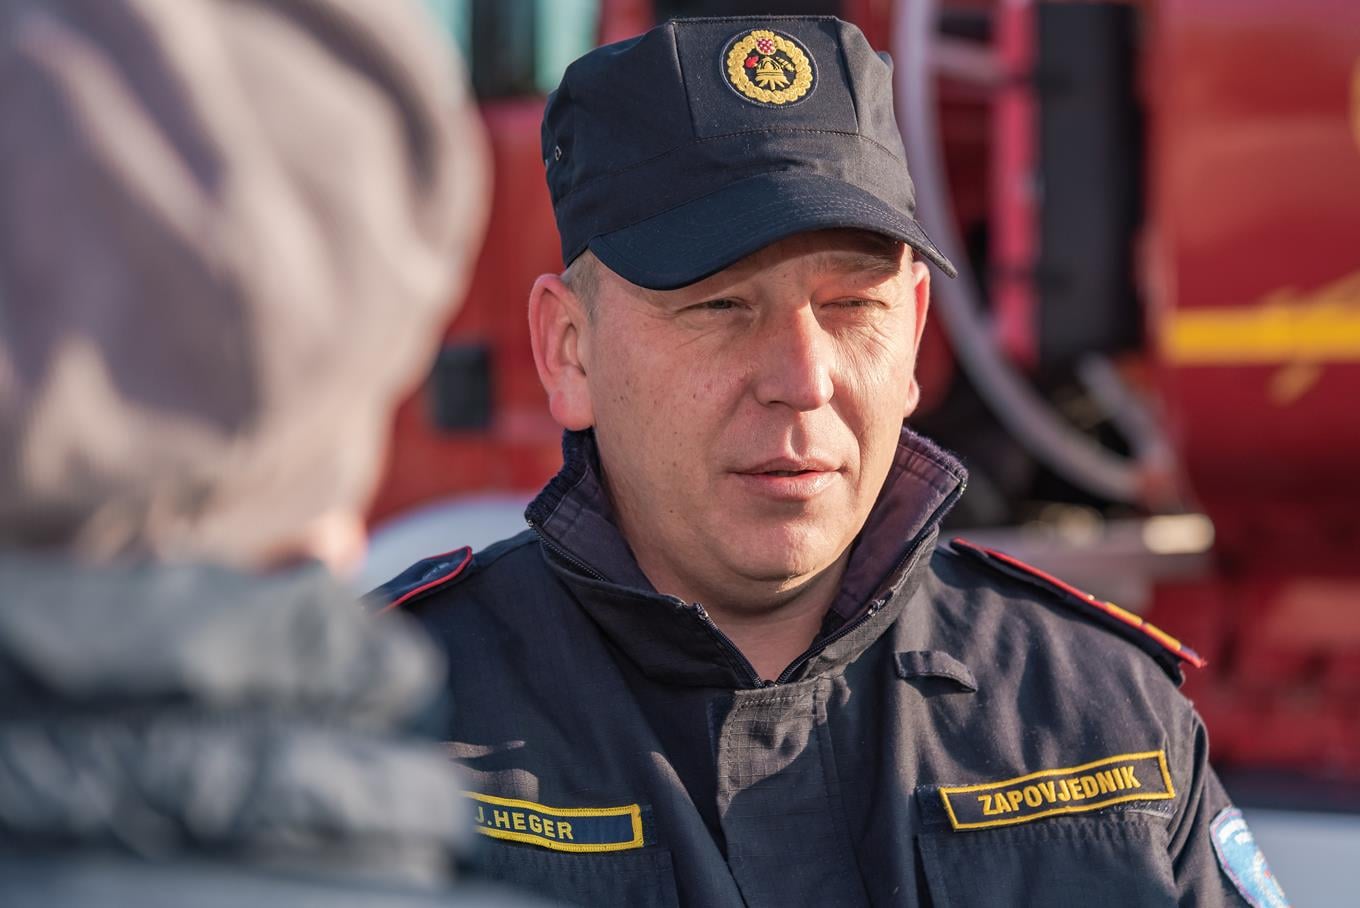 Novi županijski vatrogasni zapovjednik otkrio prioritete za početak mandata